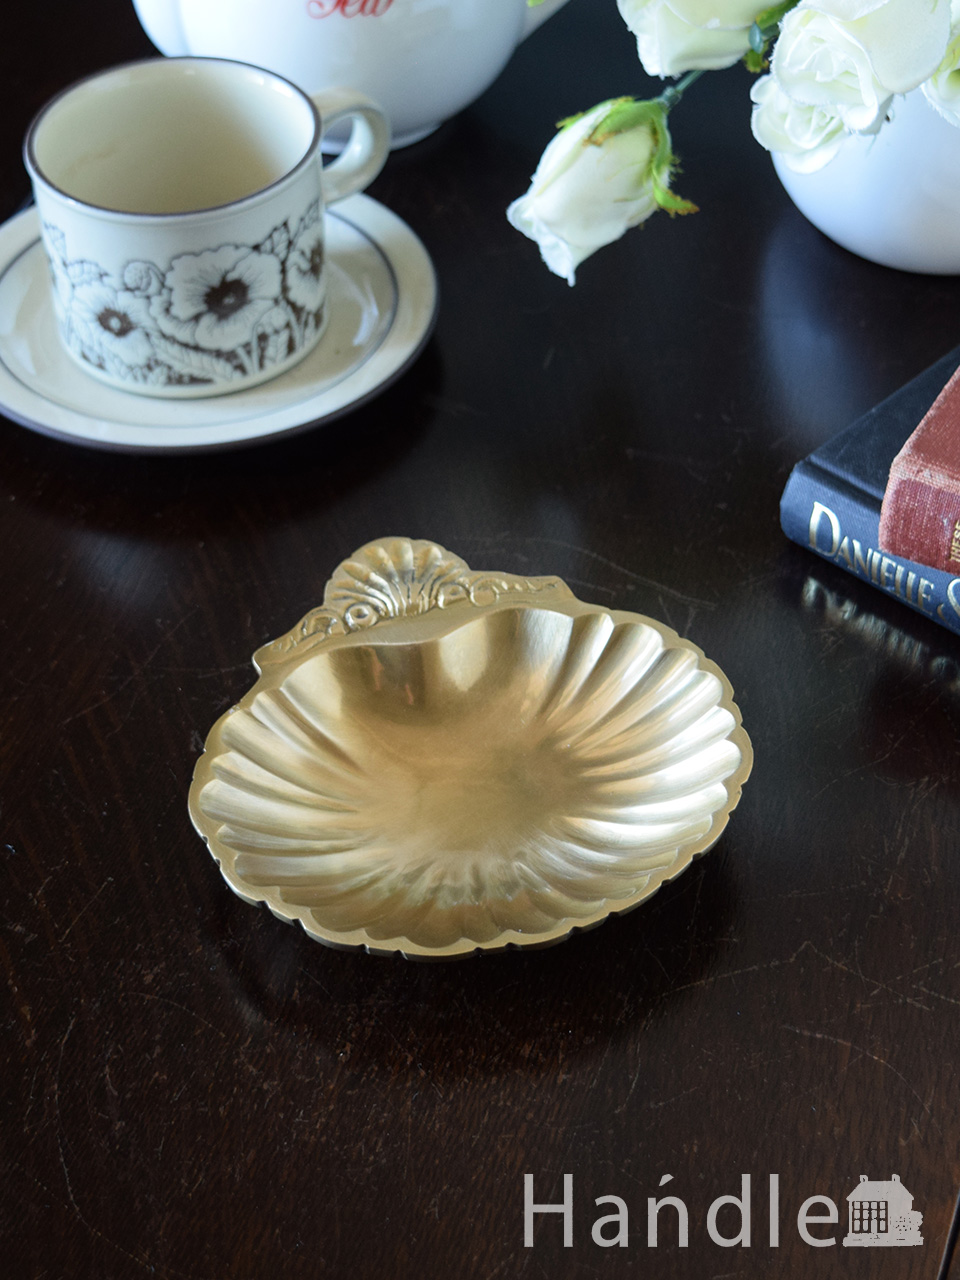 アンティーク調のおしゃれなトレイ、貝殻のモチーフが優雅な真鍮製の